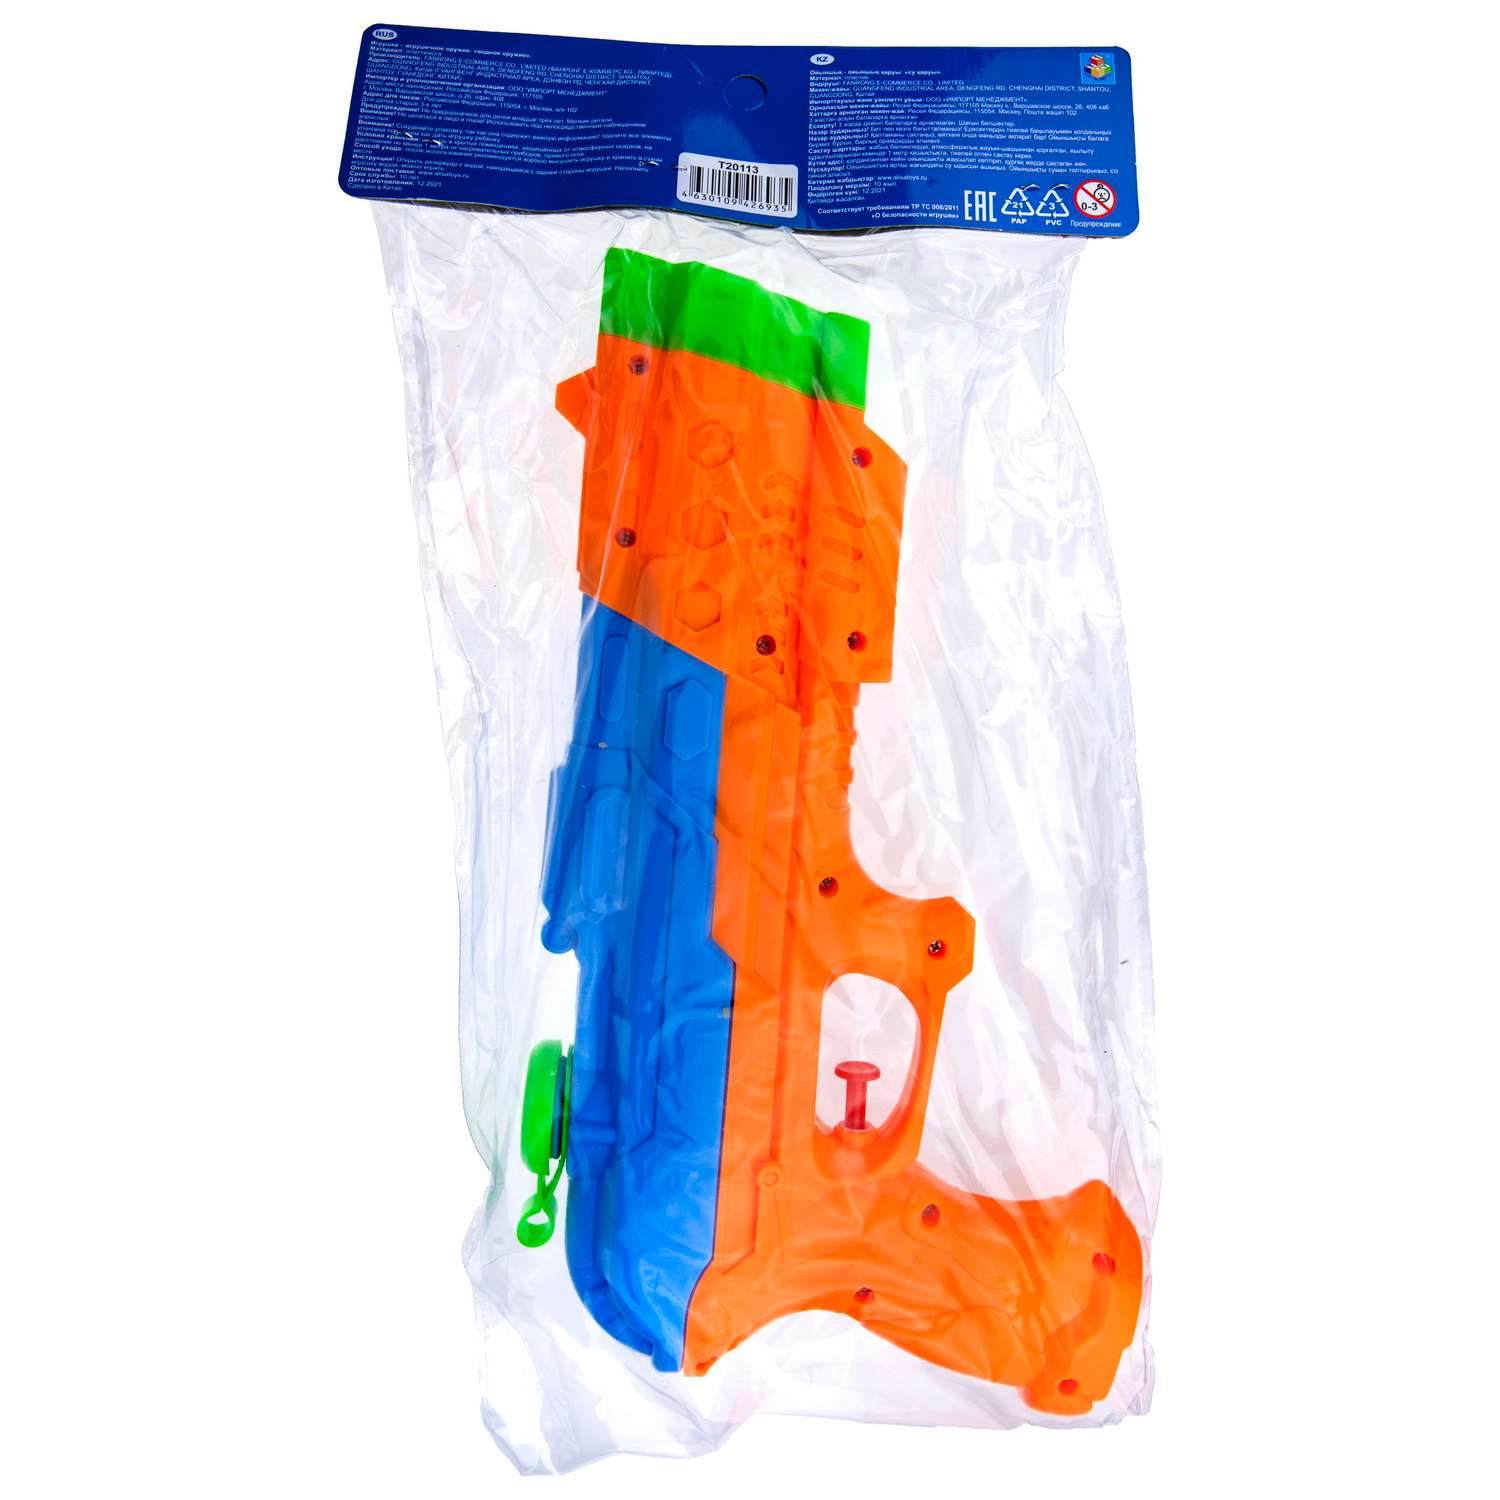 Водное оружие Aqua мания Пистолет оранжево-синий - фото 2